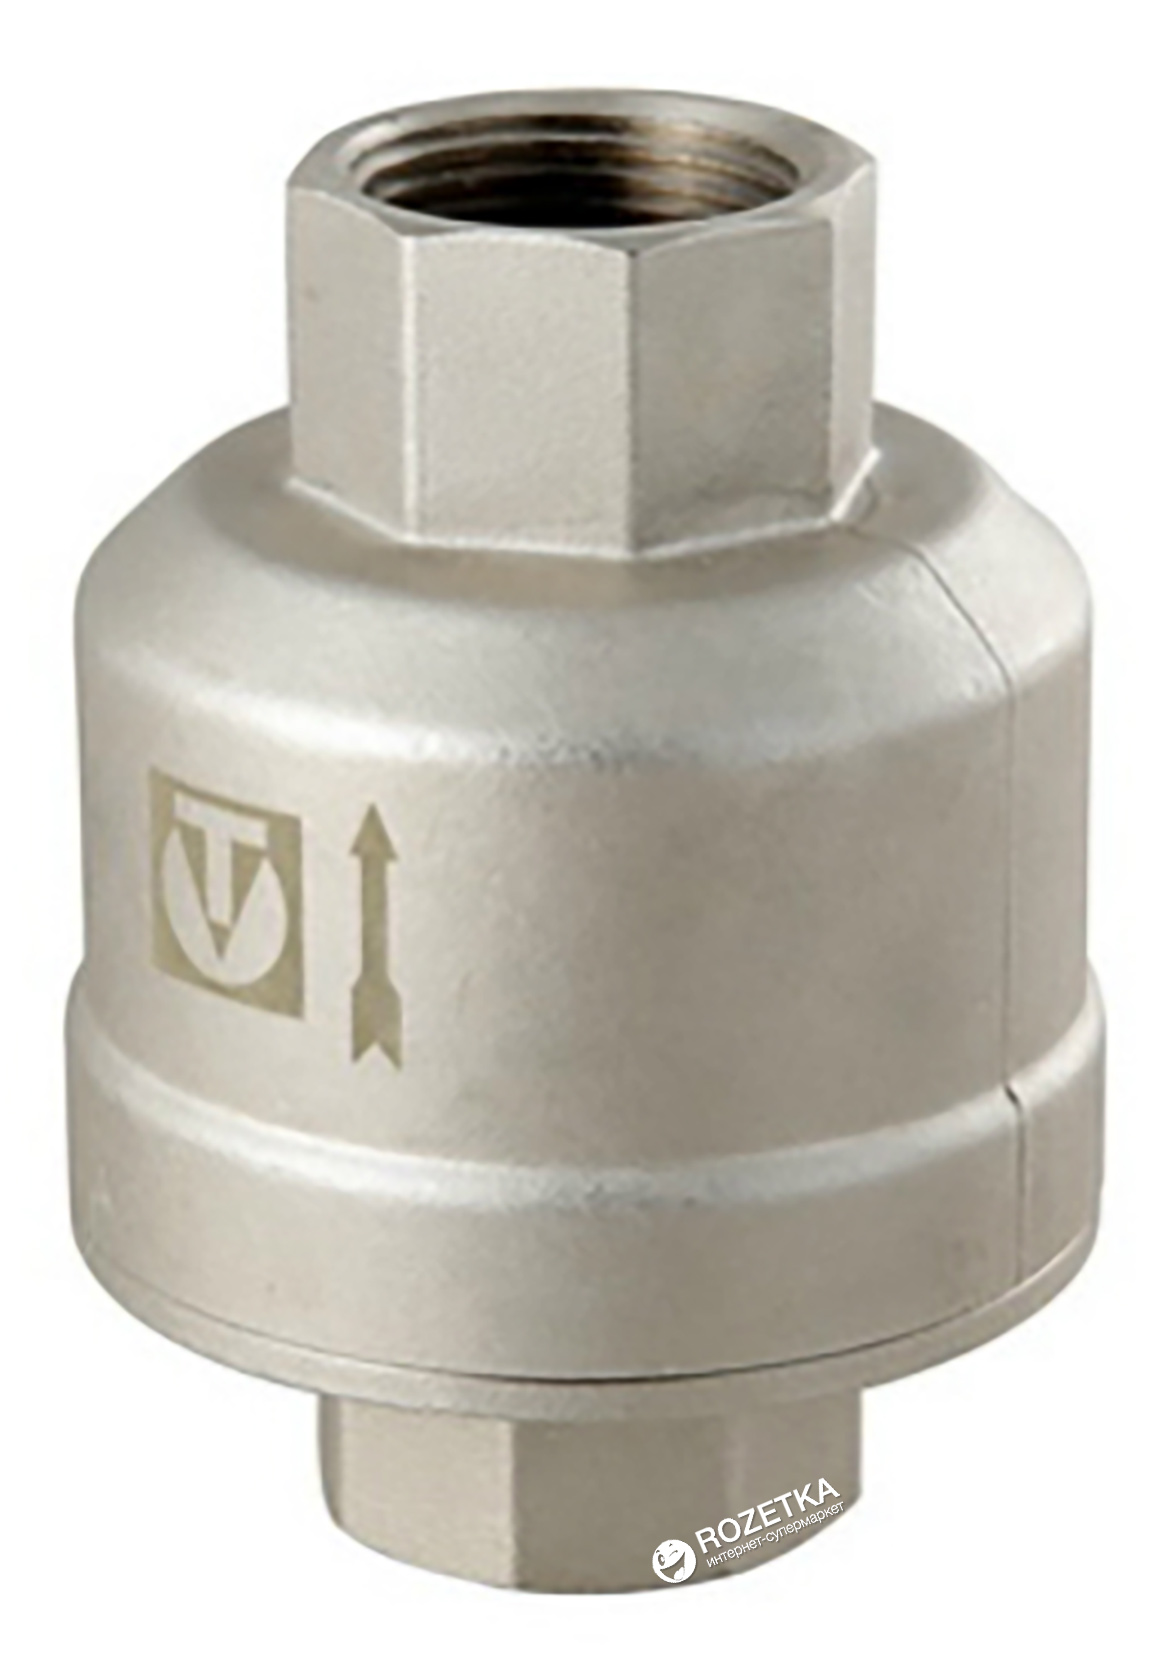 Купить обратный клапан для туалета. Обратный клапан 1 1/4 Валтек. Обратный клапан Валтек 1/2. Клапан обратный 1" Valtec. Клапан обратный 1" для гравитационных систем Valteс (VT.202.N.06).